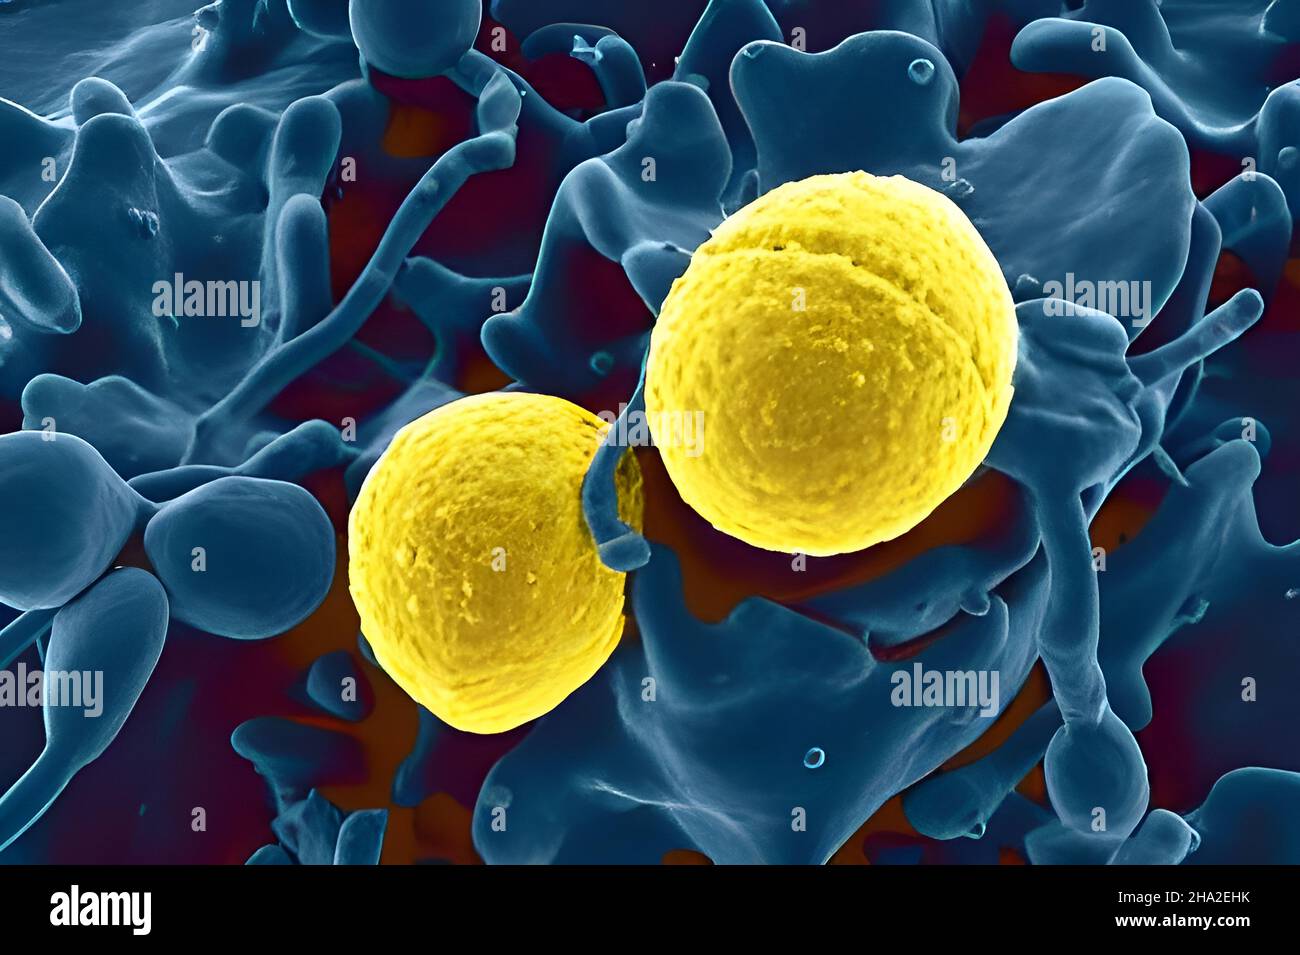 Staphylococcus aureus bacteria Stock Photo